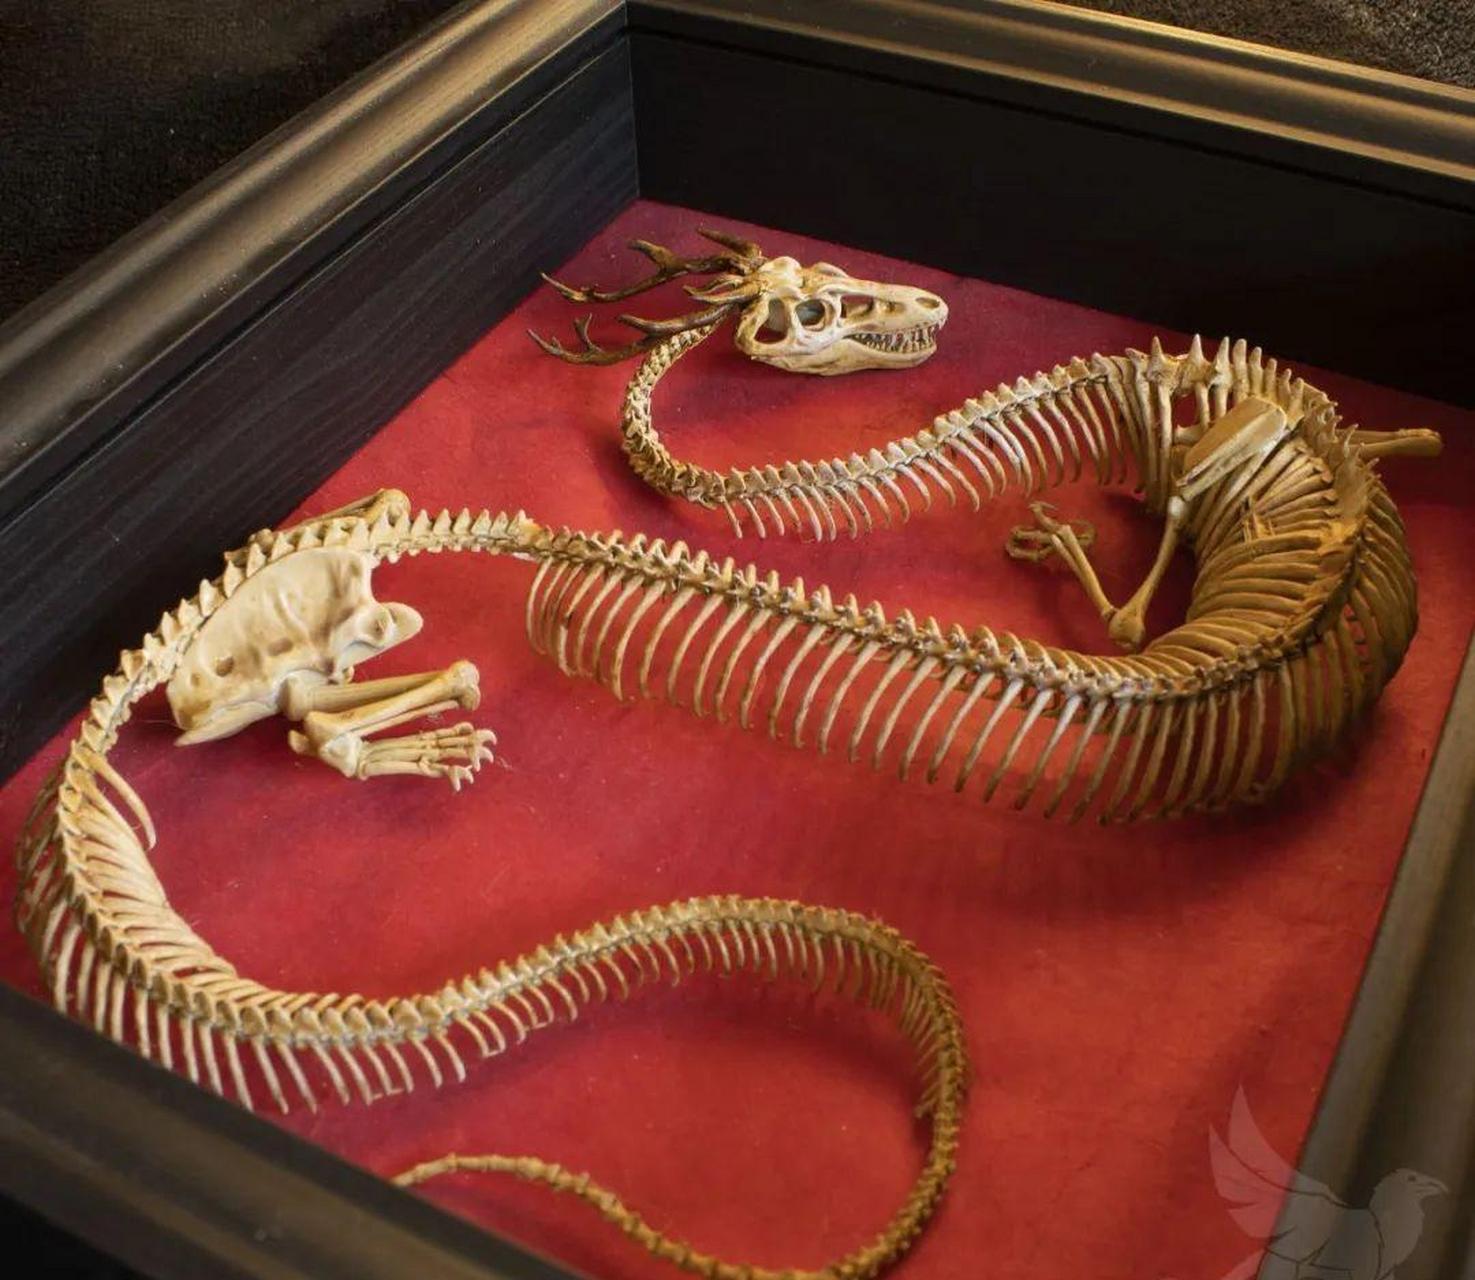 这是网友收藏的龙的骨骼,这在北京能换套四合院吧!